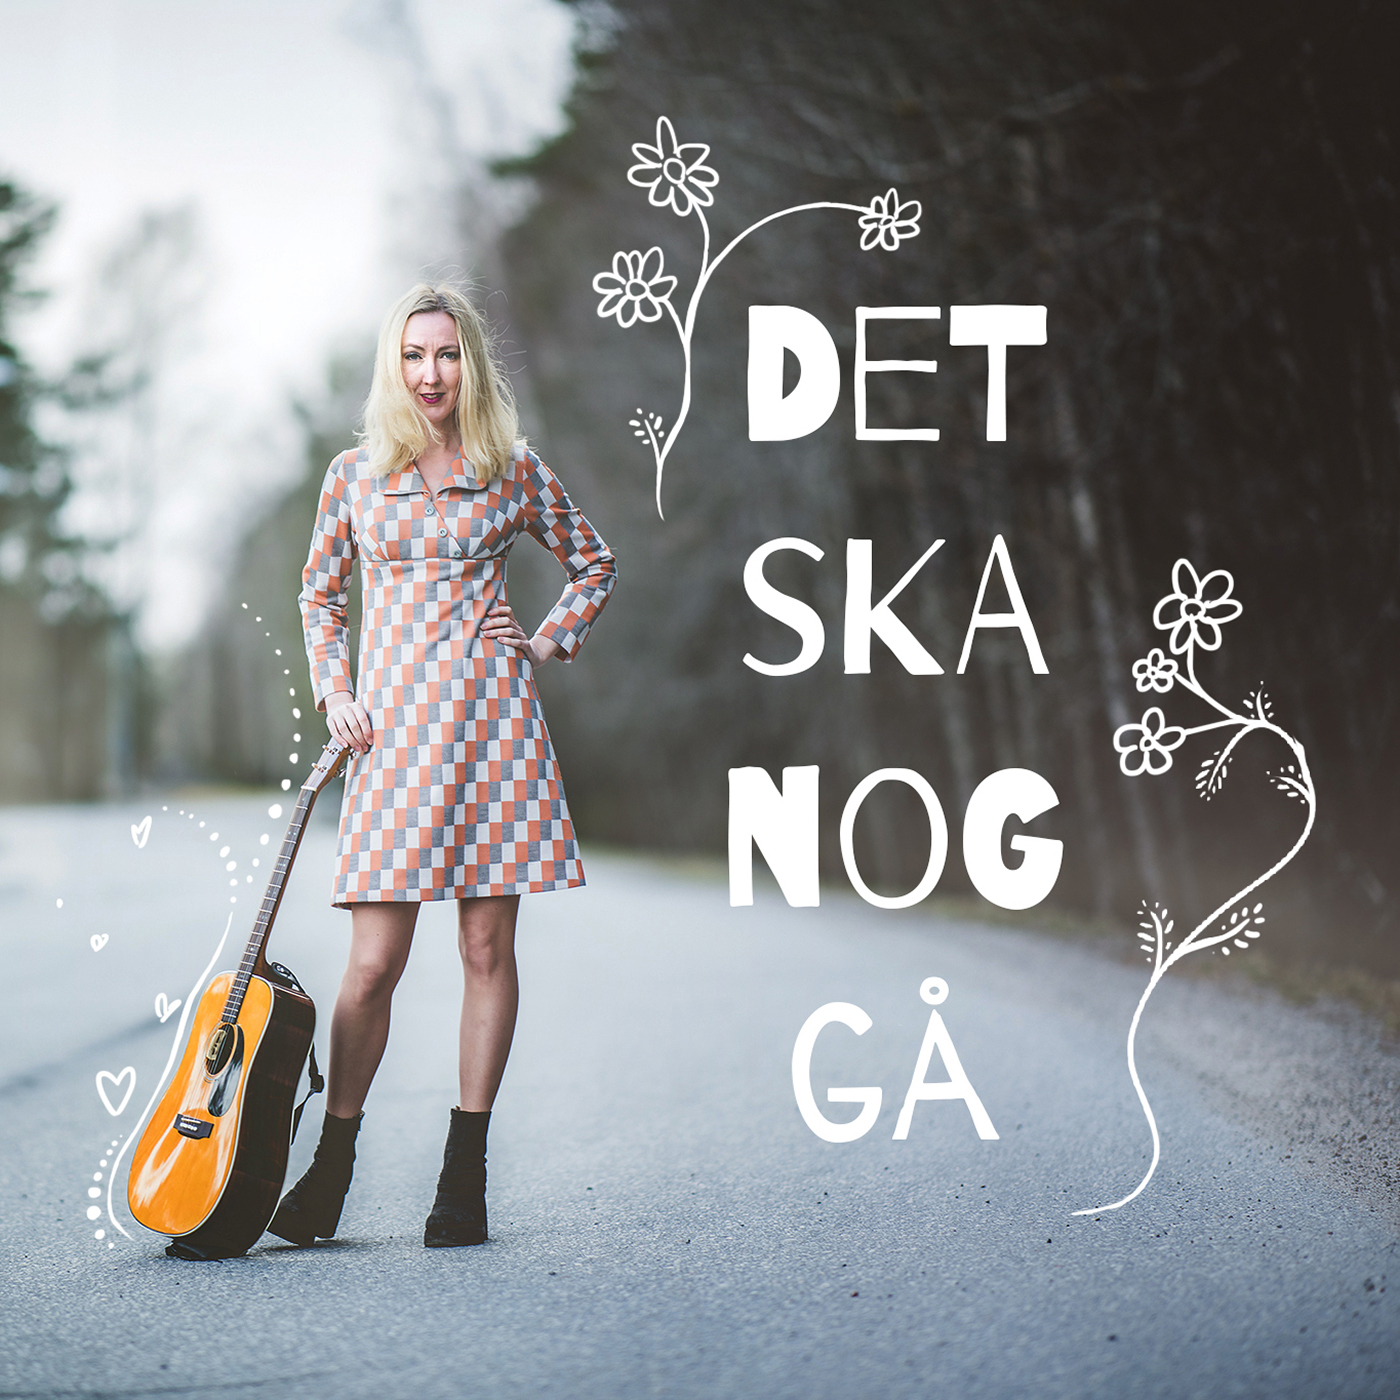 Det ska nog gå Kajsa Larsson. Kajsa står mitt på en gata och håller en gitarr som står på marken. Texten Det ska nog gå, står skriven på bilden och har ritade blommor runtomkring.